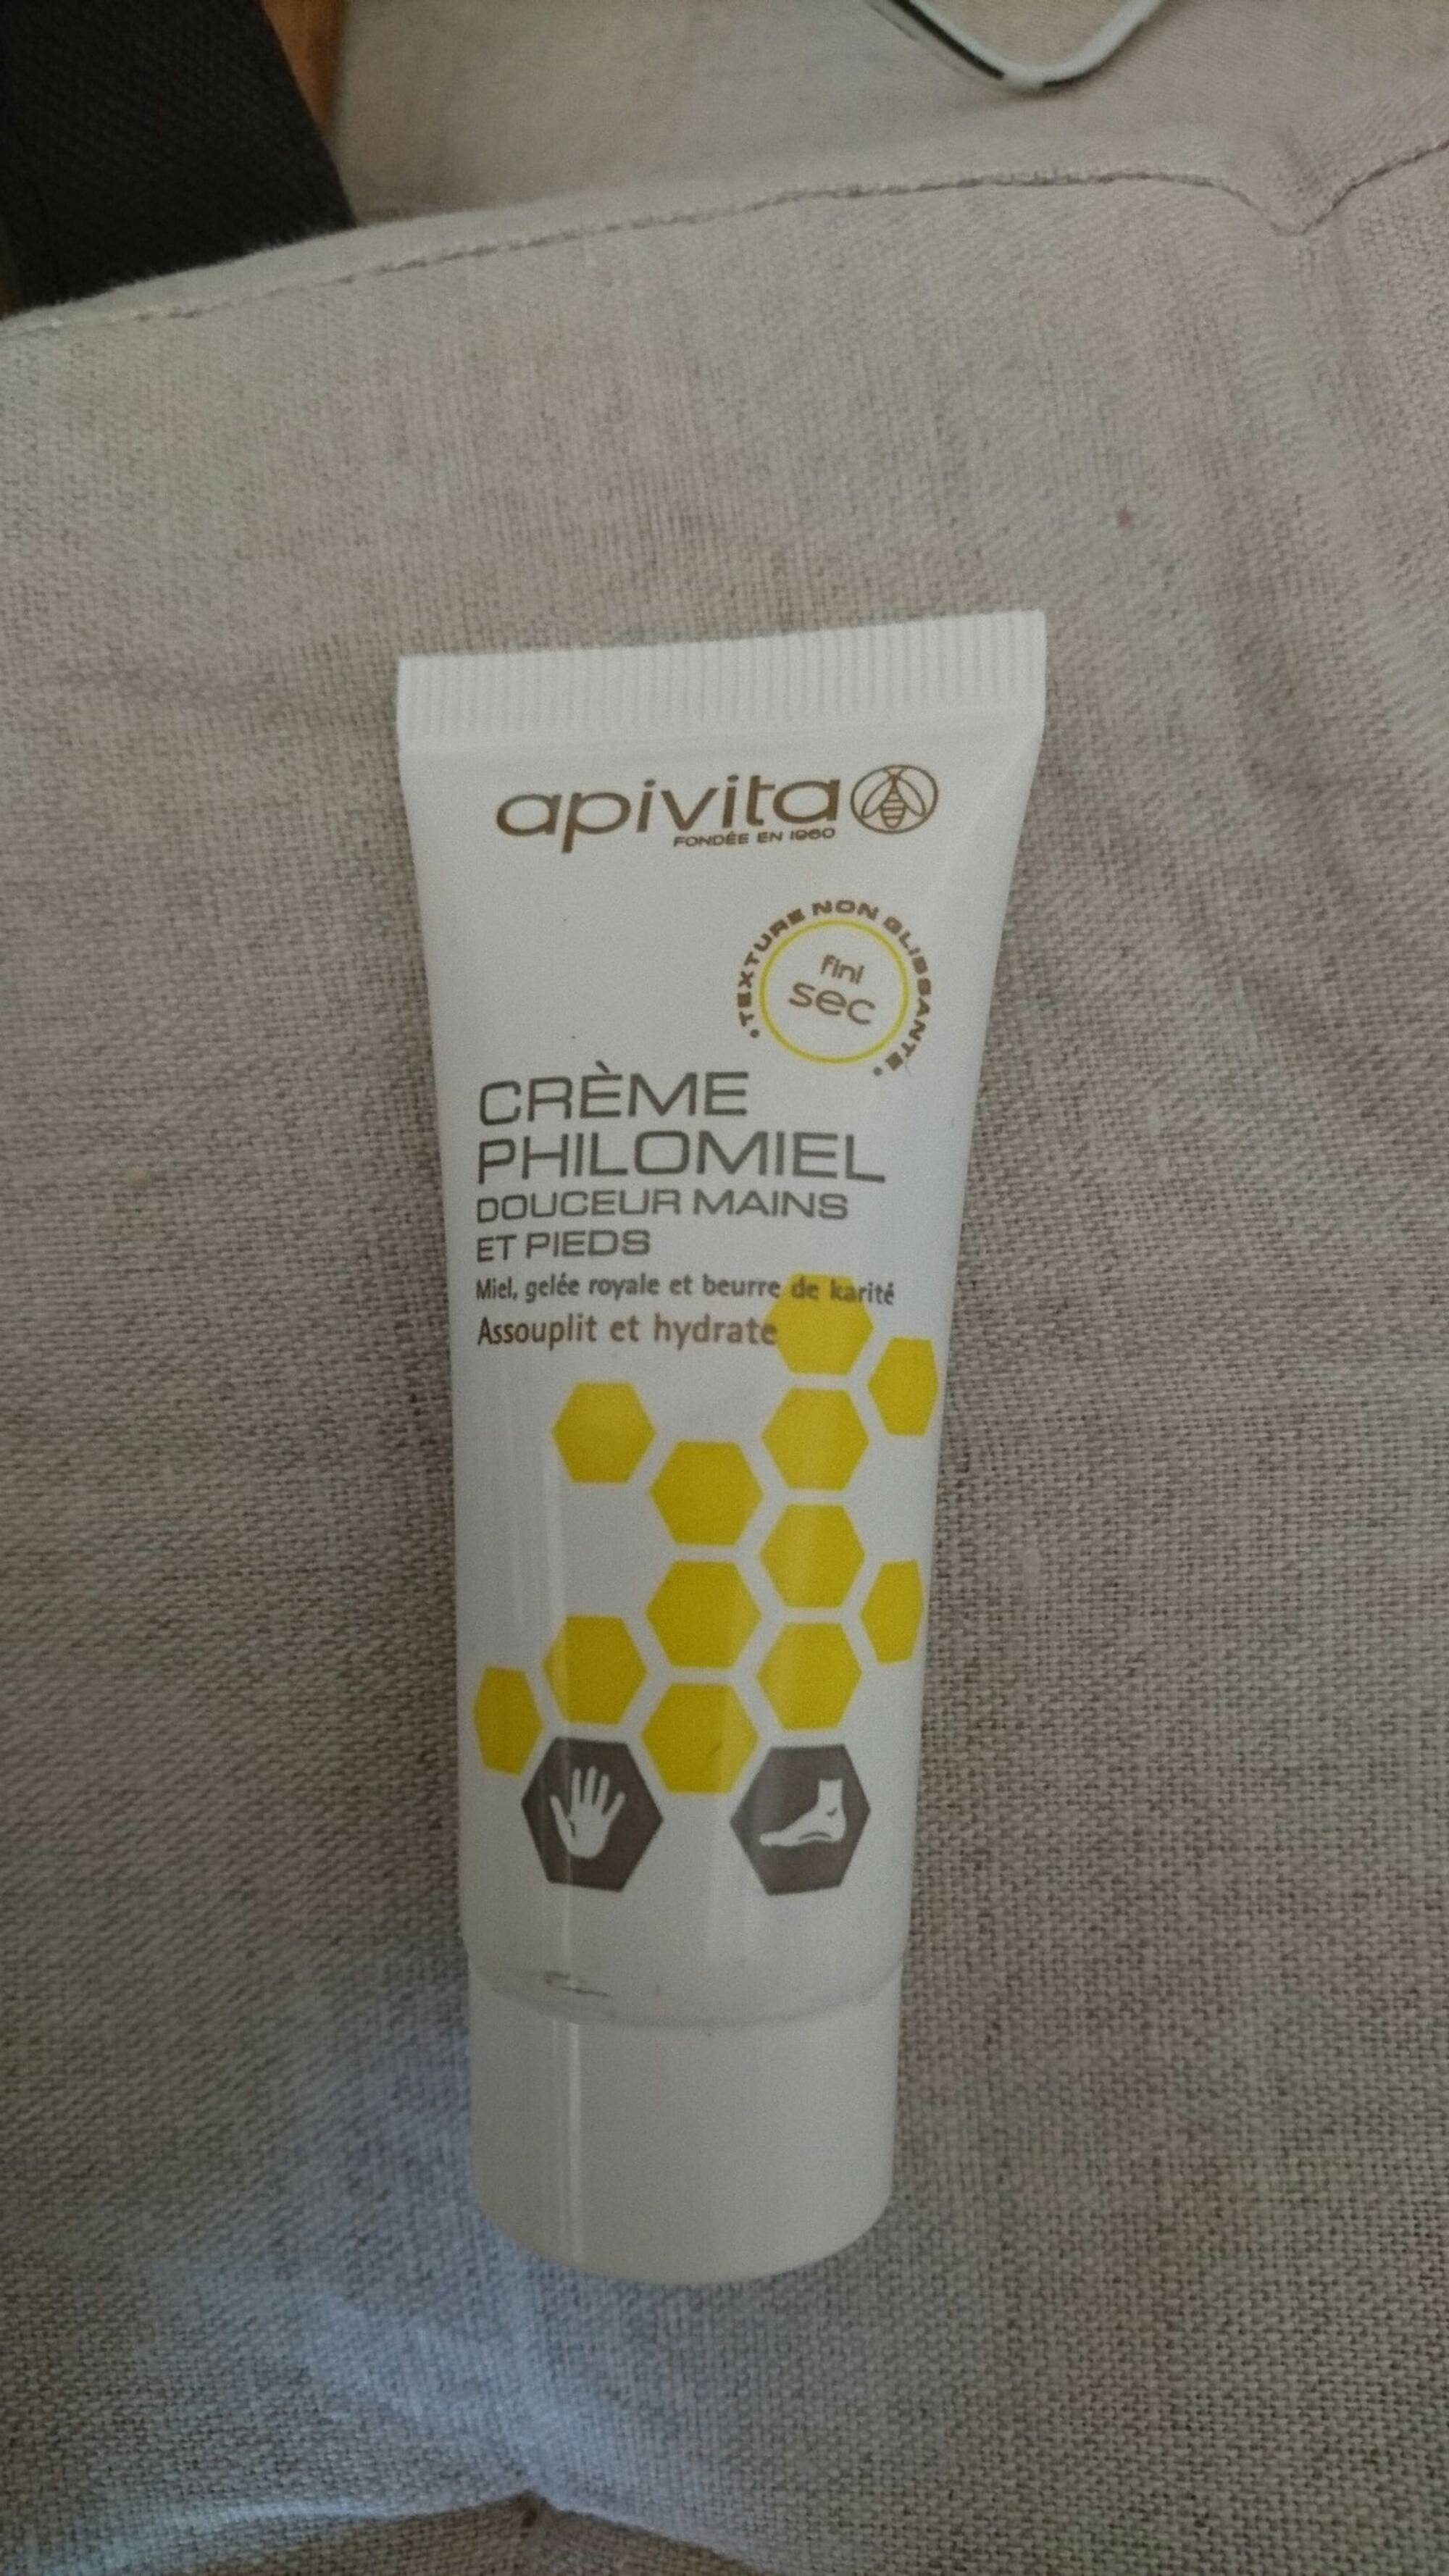 APIVITA - Crème Philomiel - Douceur mains et pieds